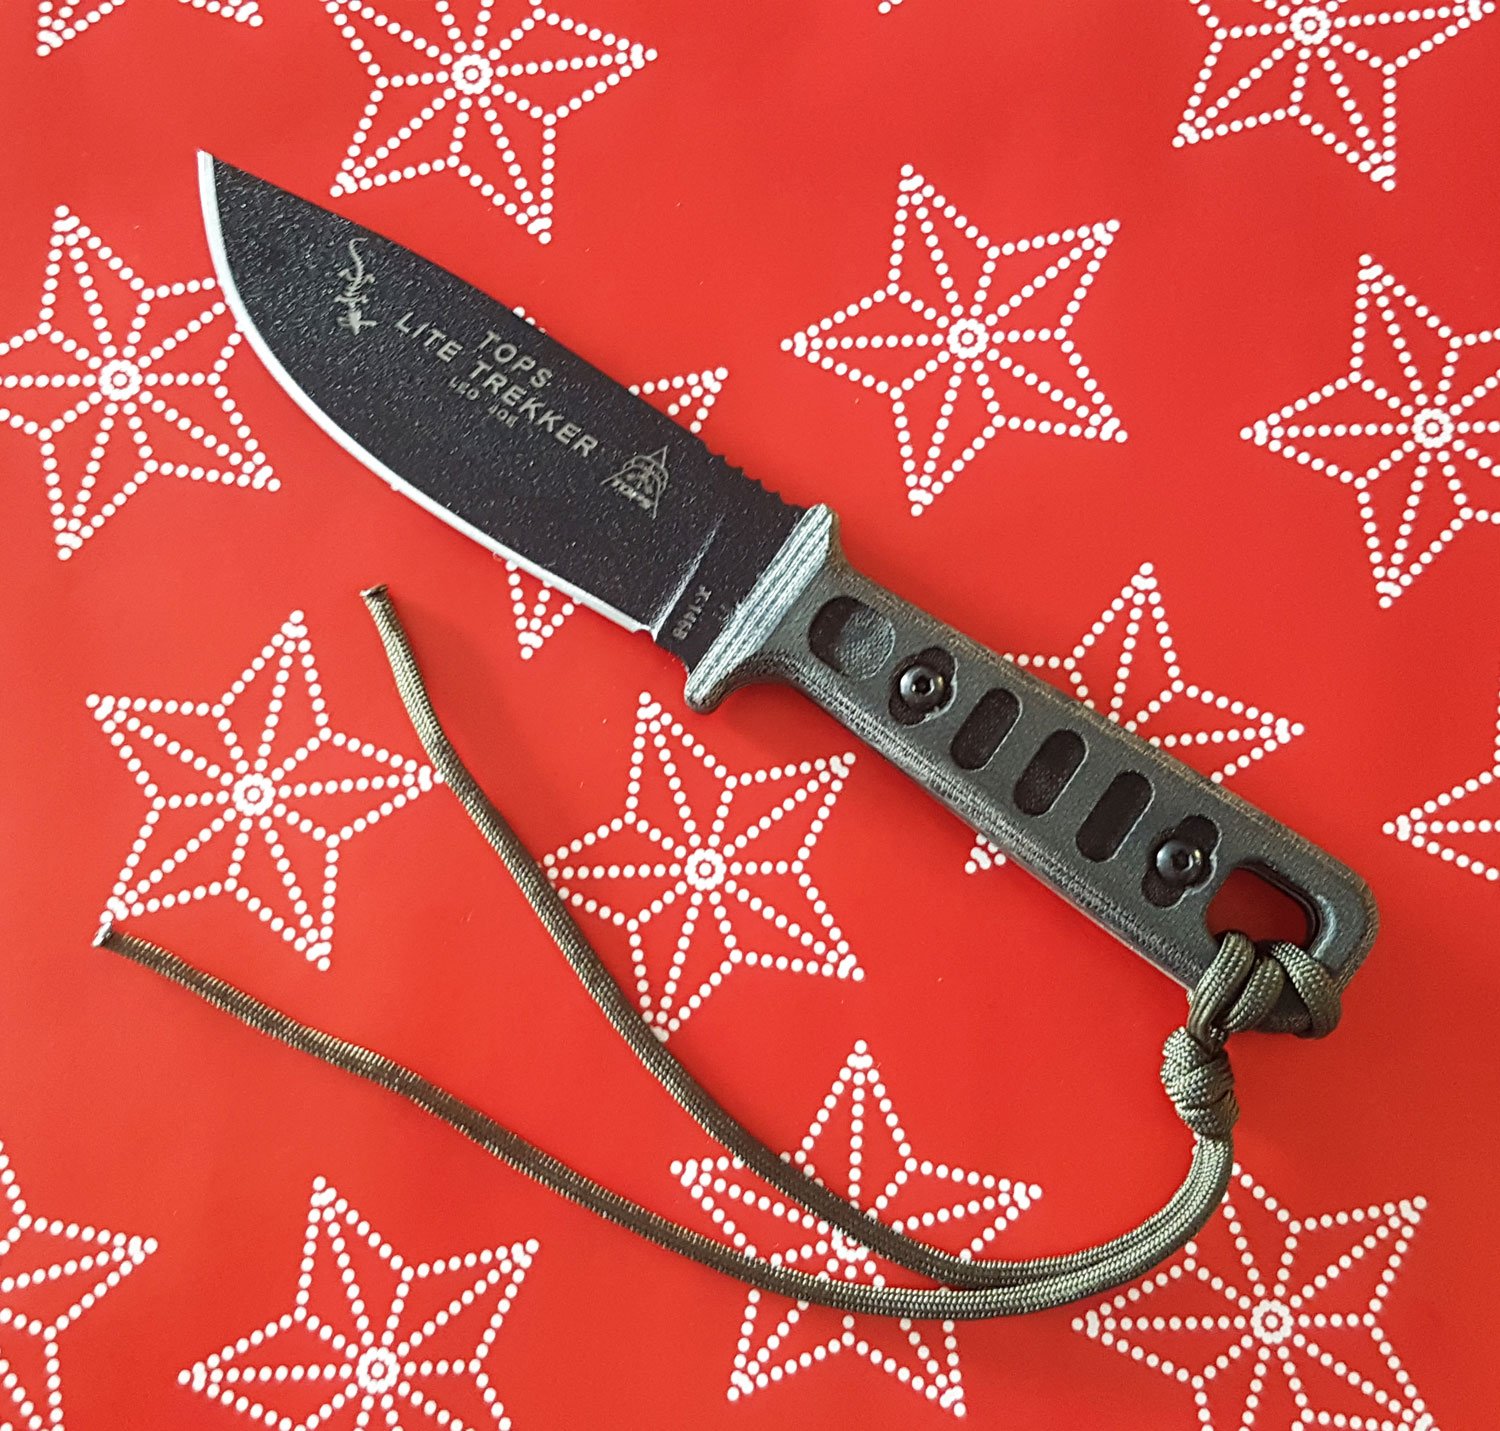 oficina postal dolor de muelas clon Extac Australia on Twitter: "Only 1 Trekker left in Extacs Premium range: TOPS  Knives Lite Trekker Survival Standard Fixed Blade Knife  https://t.co/3hKmMj3H70 #aussieEDC #goldcoast #Extac #topsknives  https://t.co/Et2IMHCpCu" / Twitter